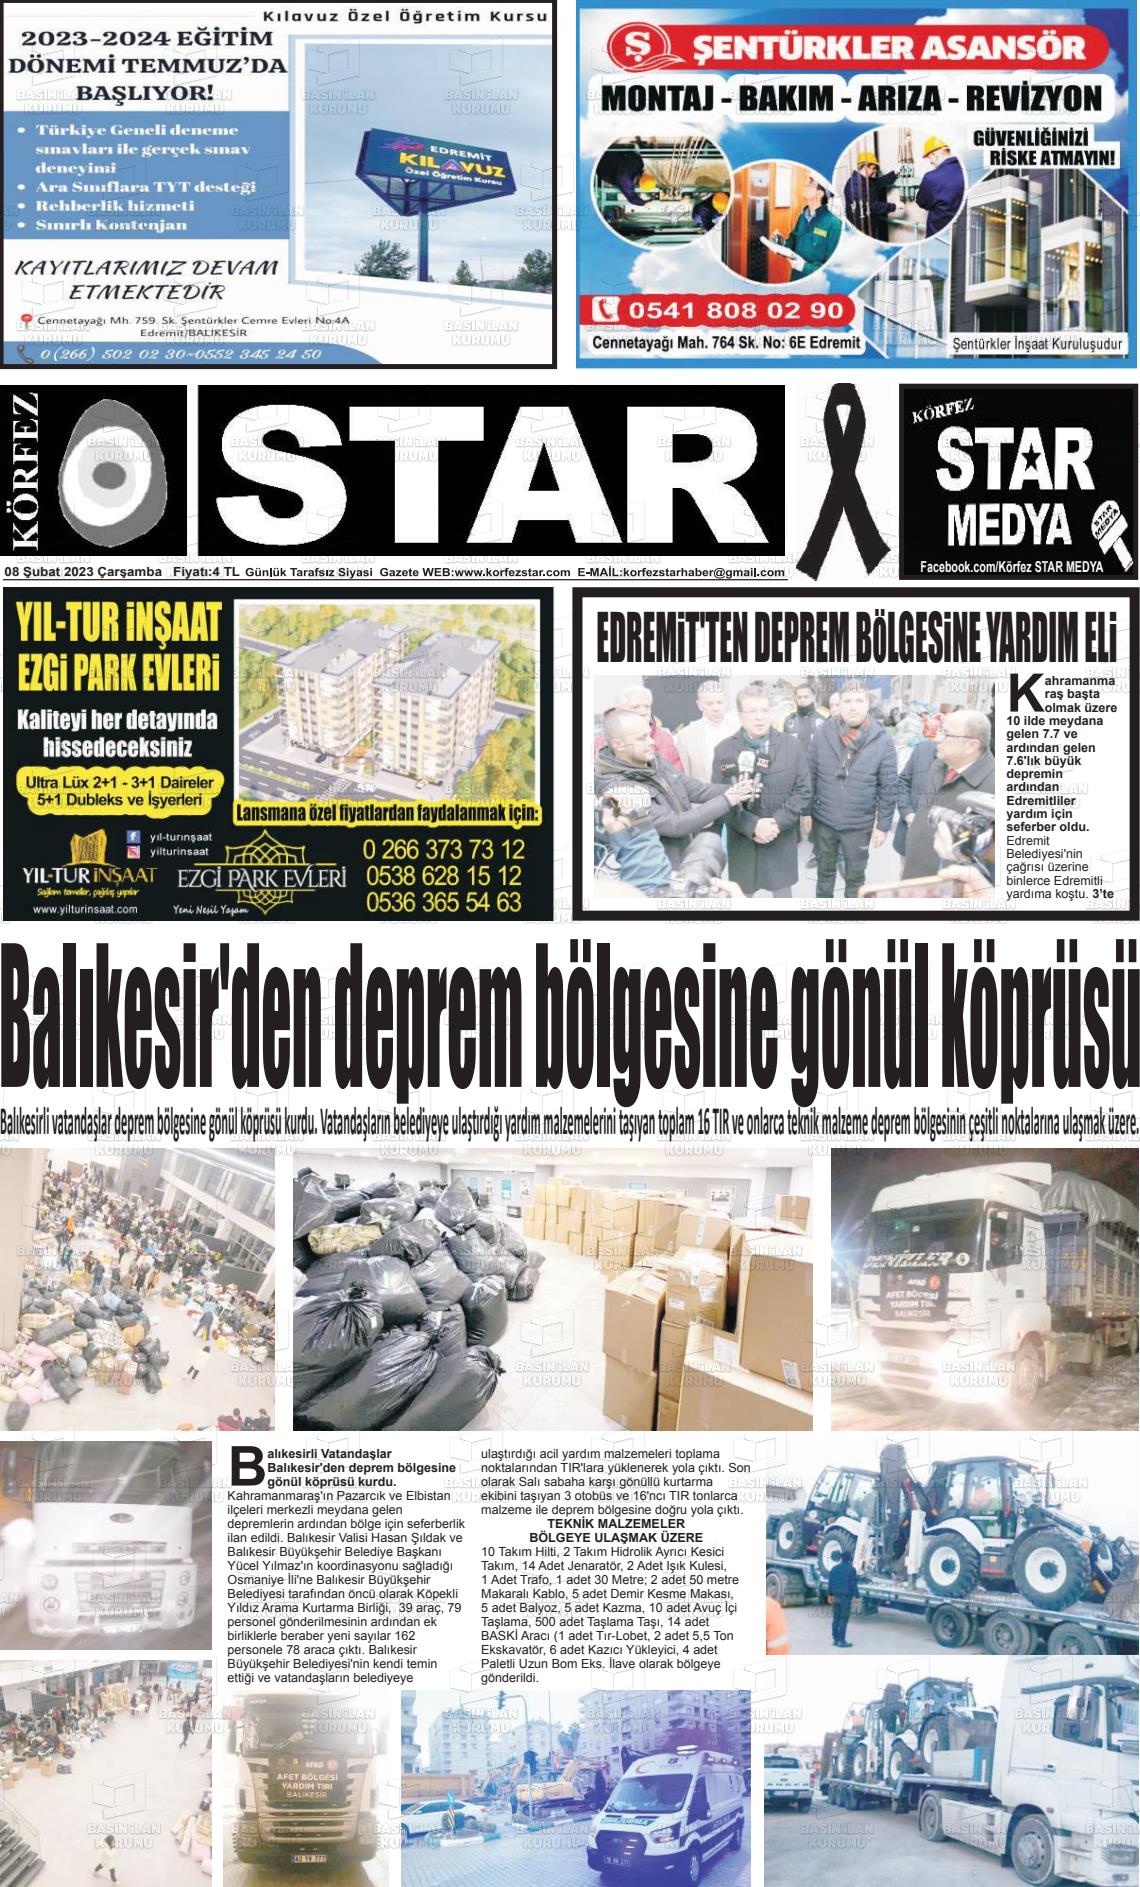 08 Şubat 2023 Körfez Star Gazete Manşeti